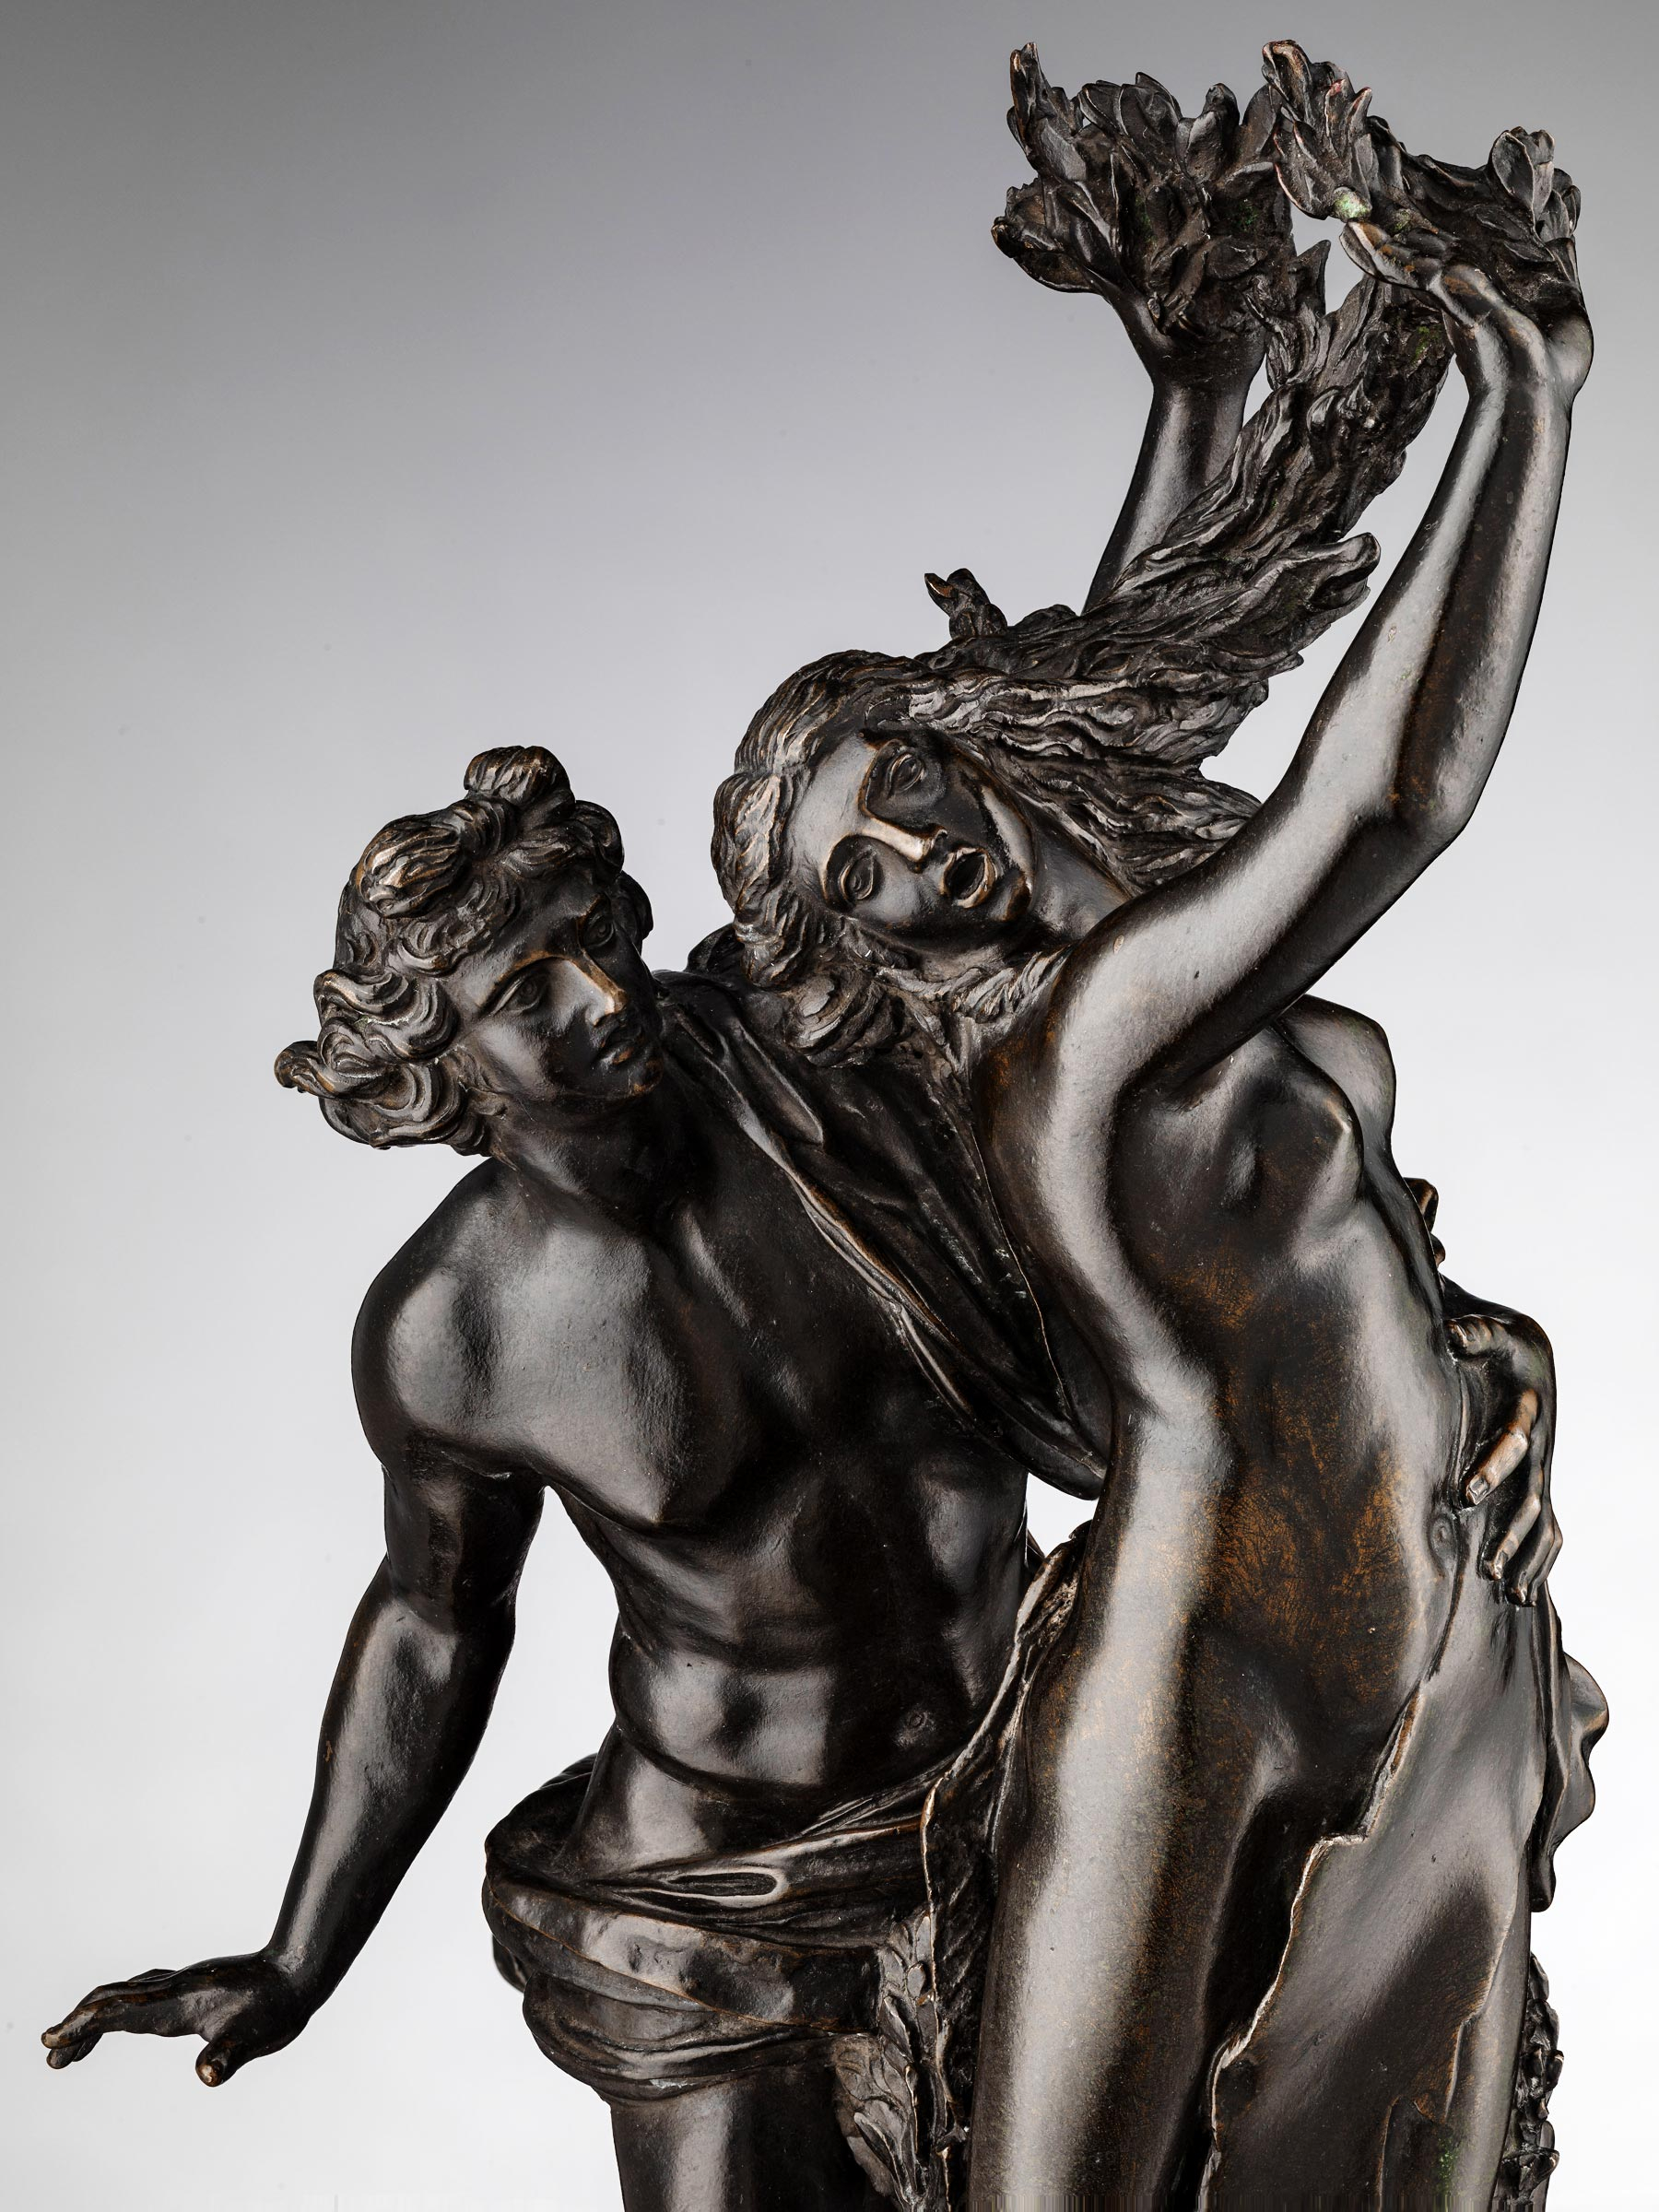 Francesco Righetti - Apollo and Daphne after Giovan Lorenzo Bernini